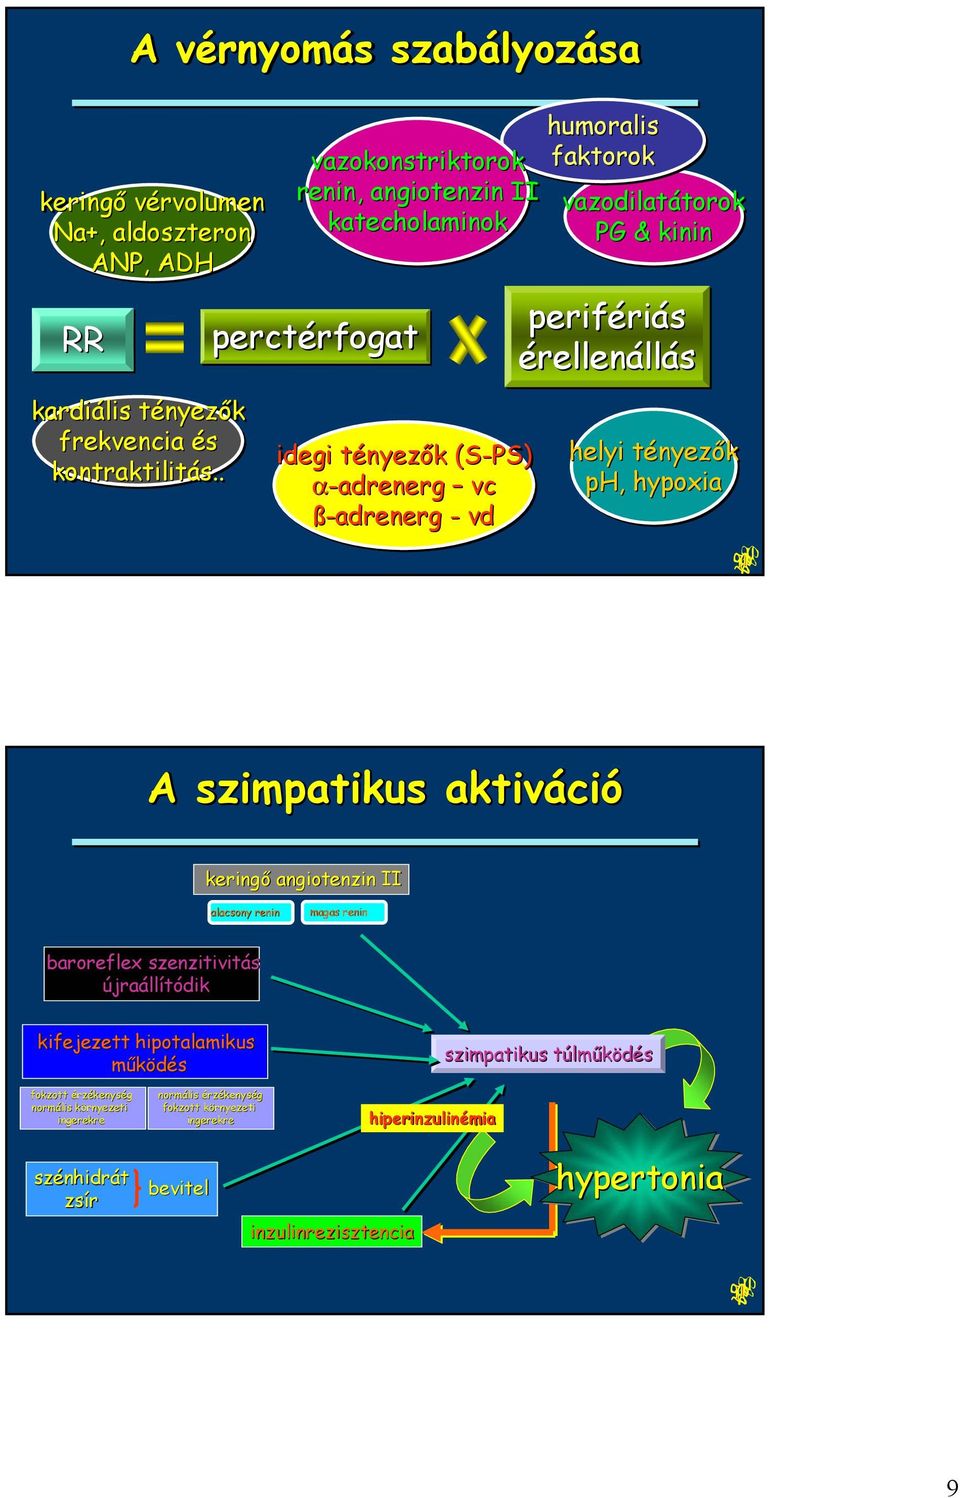 ß-adrenerg - vd perifériás érellenállás helyi tényezők ph, hypoxia A szimpatikus aktiváció keringő angiotenzin II alacsony renin magas renin baroreflex szenzitivitás